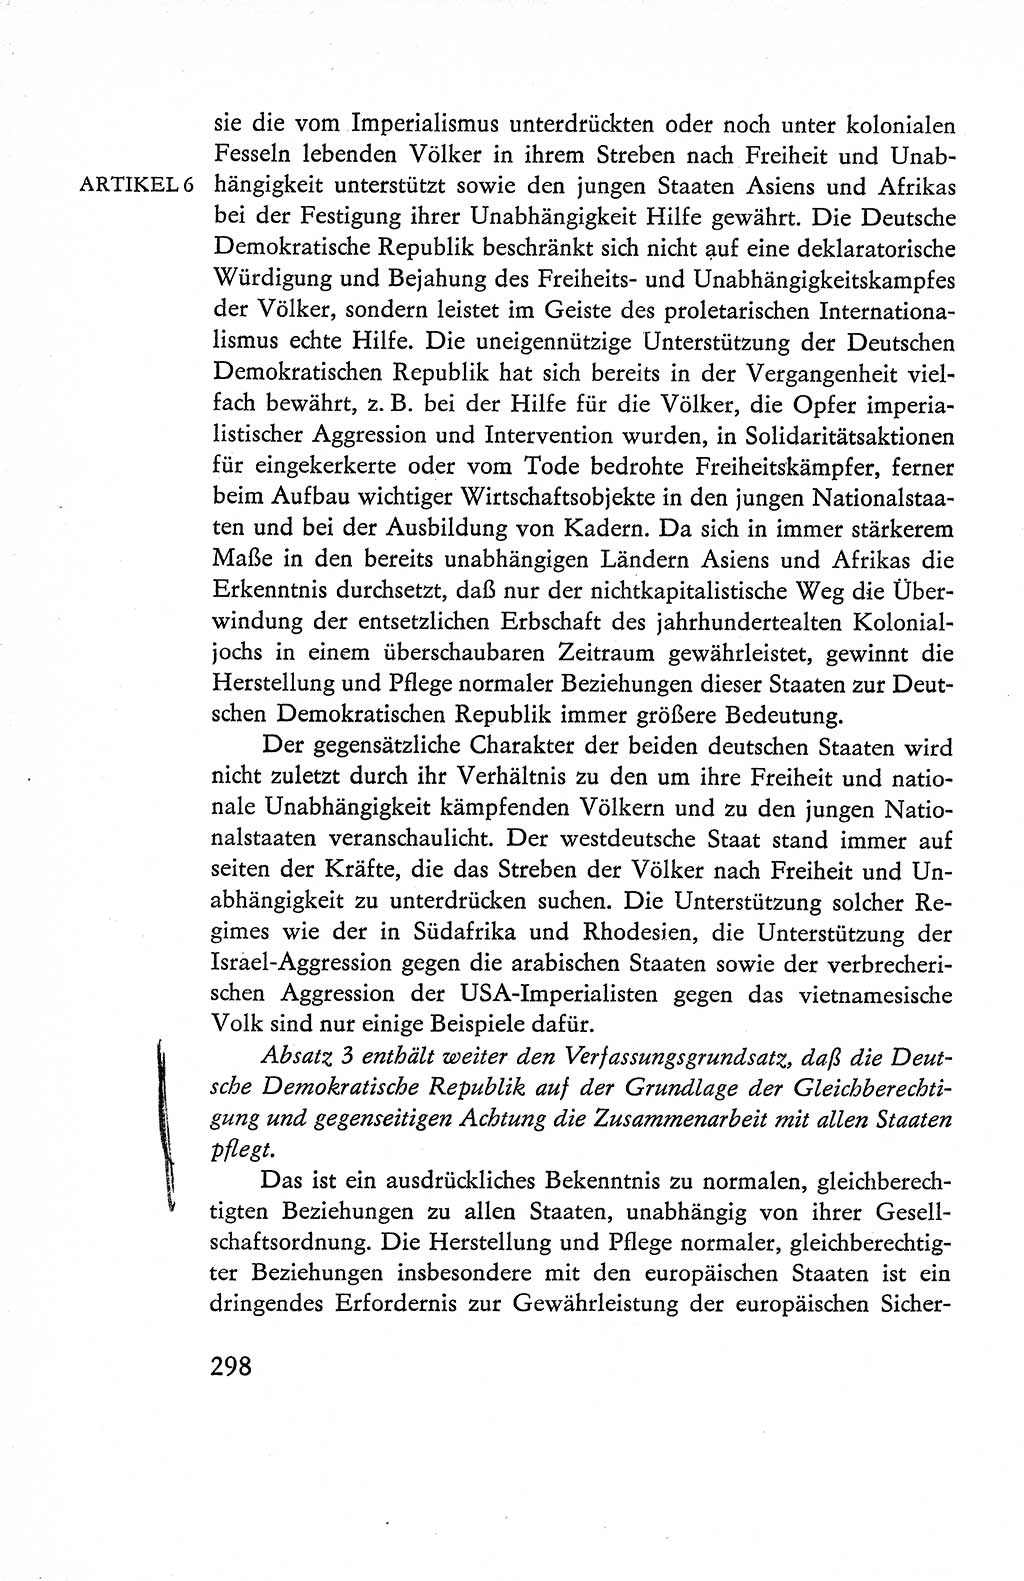 Verfassung der Deutschen Demokratischen Republik (DDR), Dokumente, Kommentar 1969, Band 1, Seite 298 (Verf. DDR Dok. Komm. 1969, Bd. 1, S. 298)